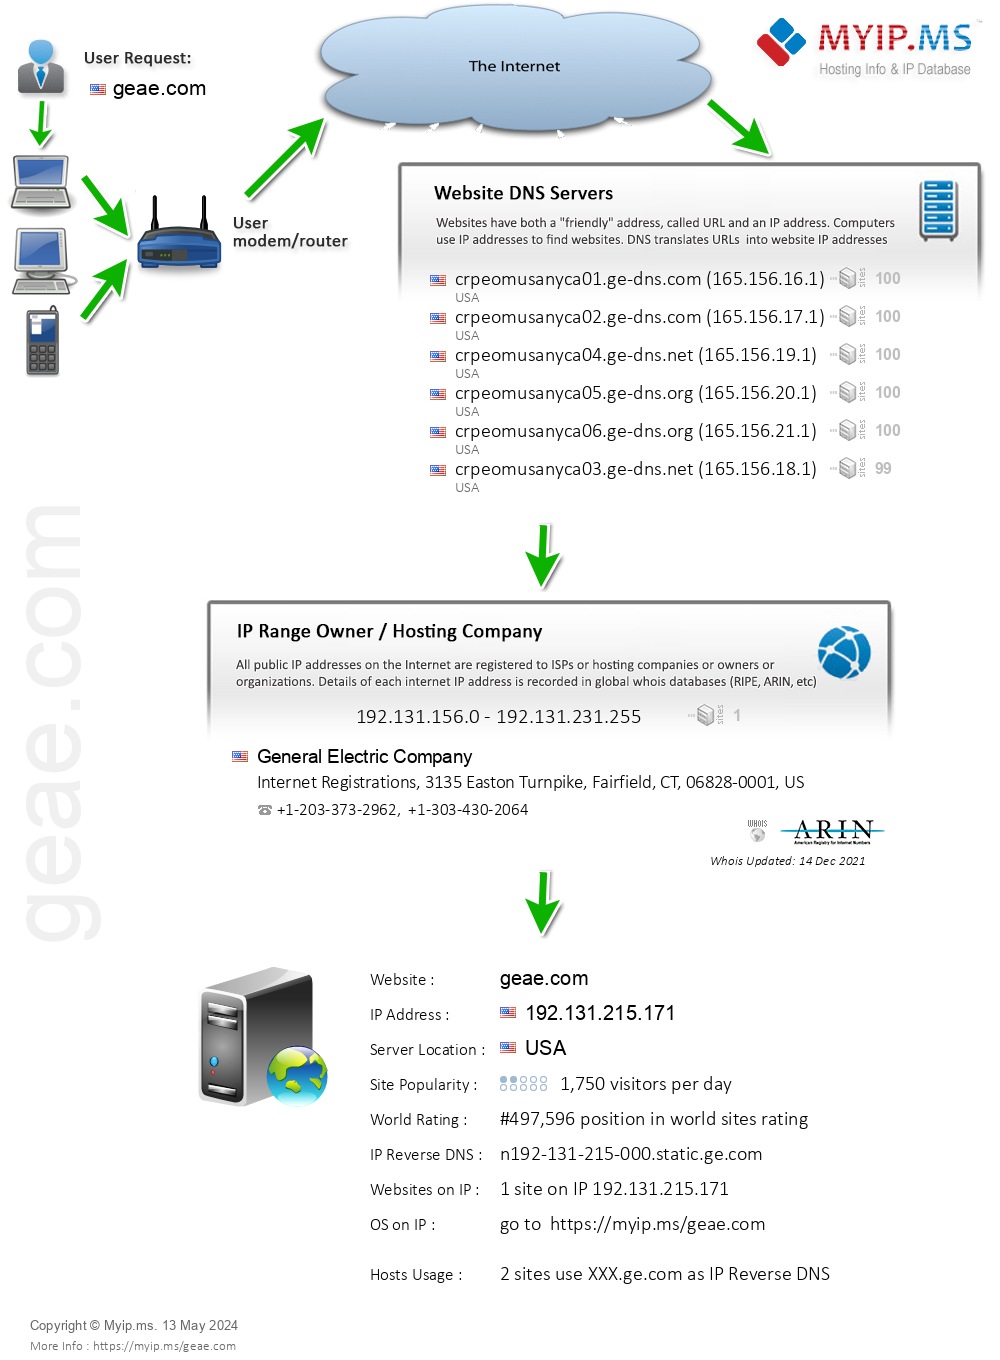 Geae.com - Website Hosting Visual IP Diagram